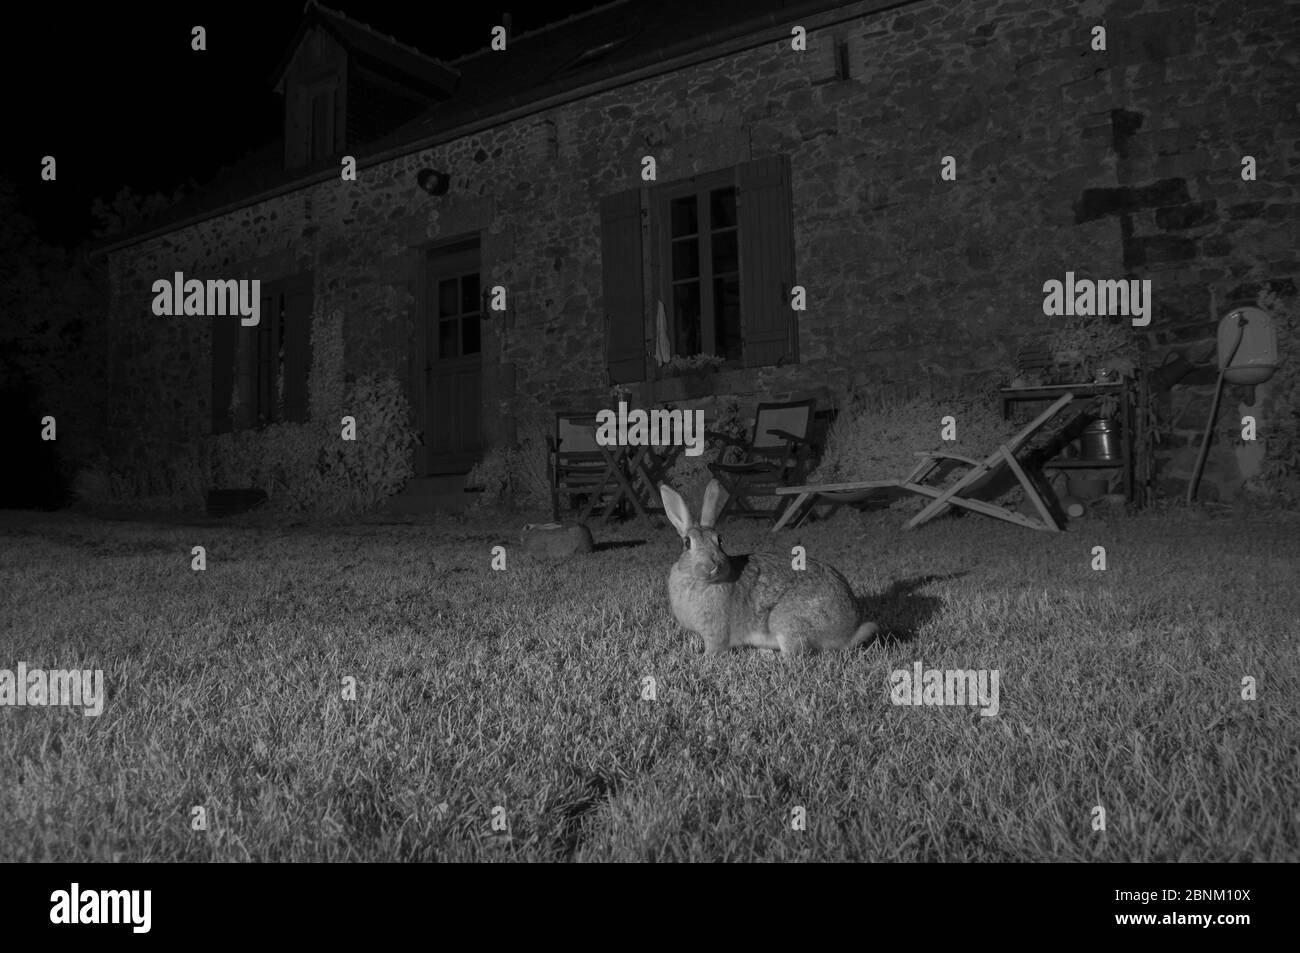 Lapins européens (Oryctolagus cuniculus) à l'extérieur de la maison, pris avec lumière infrarouge la nuit. France, juin. Banque D'Images